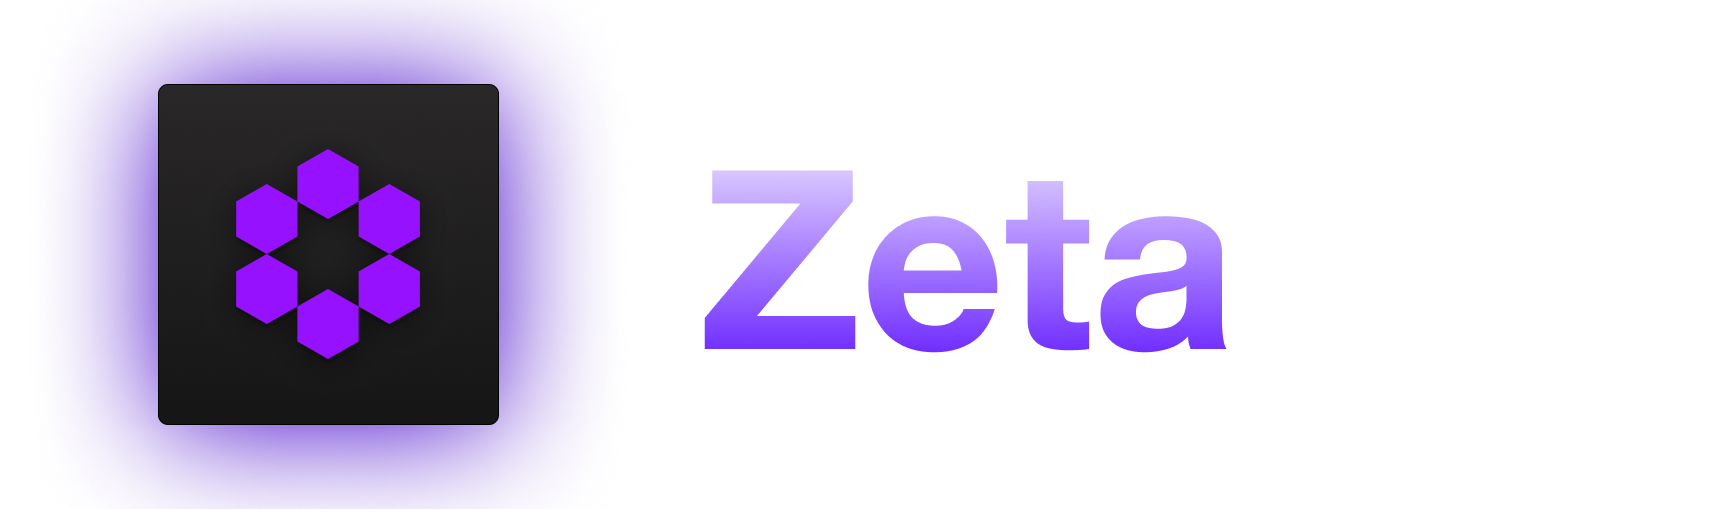 Zeta banner